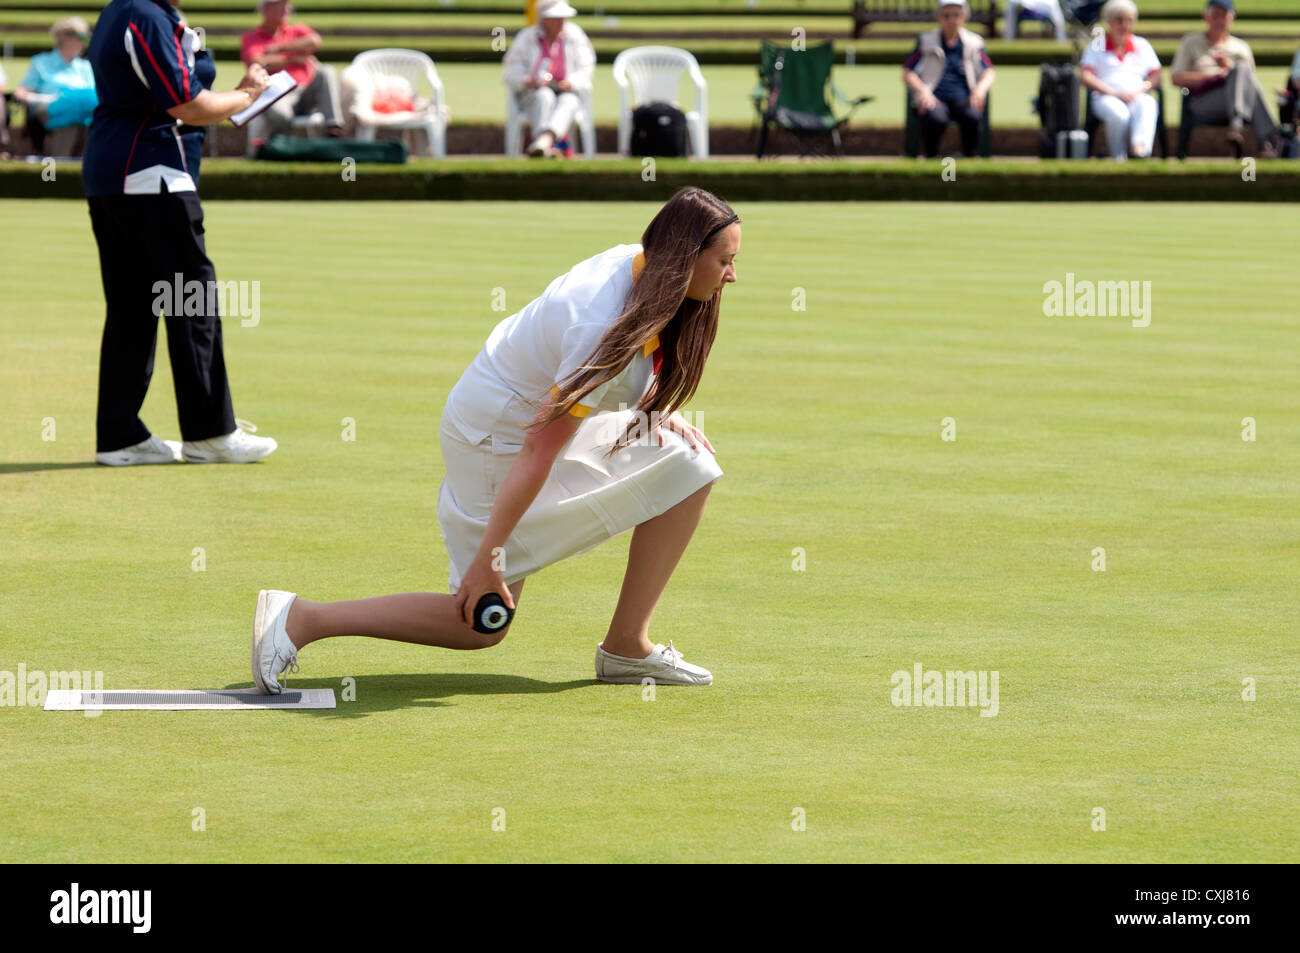 Lawn bowler bowling green sports amateur sportswoman sportswomen ...